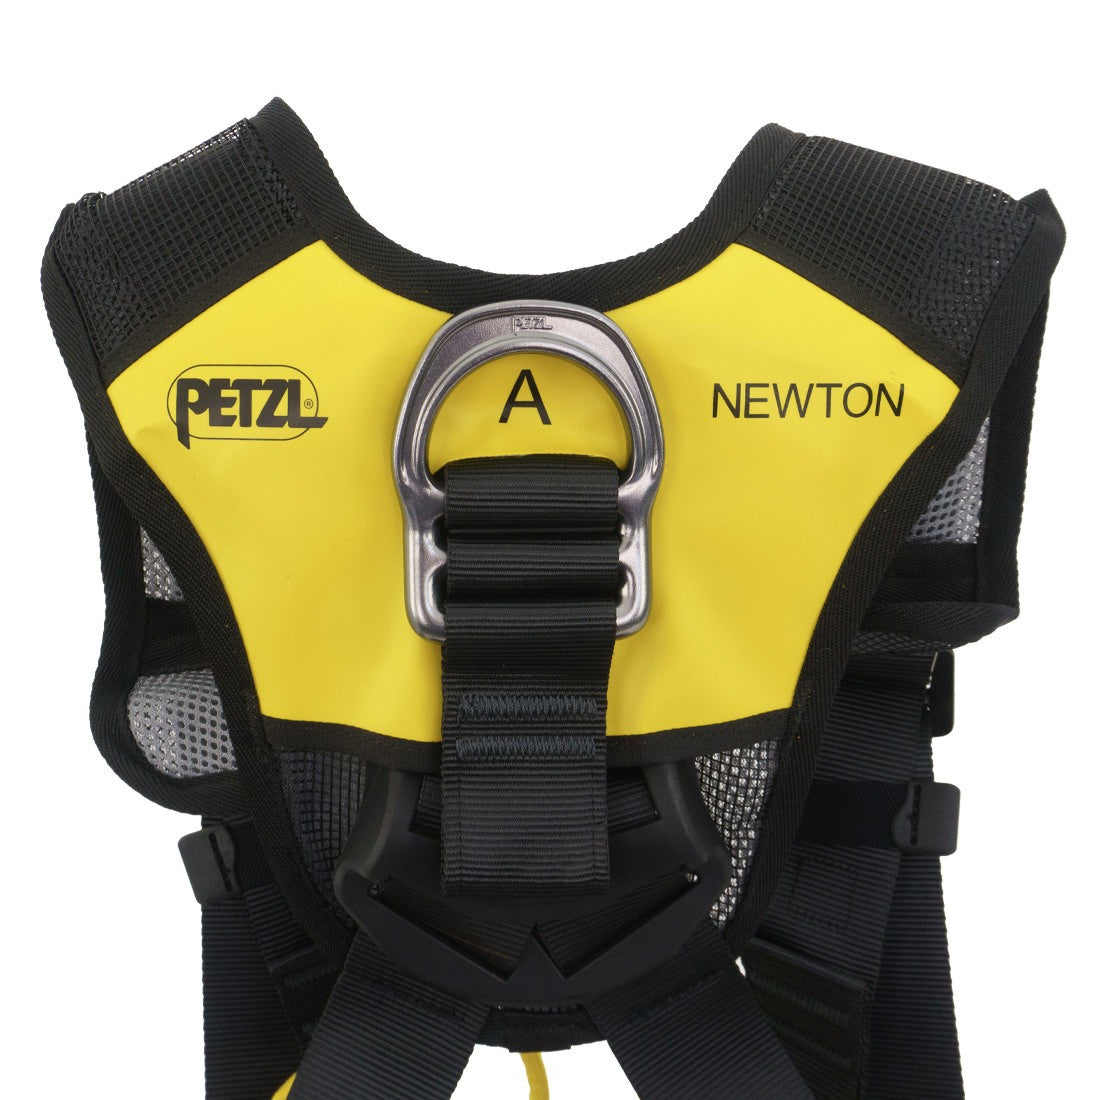 Petzl Newton Fast MEWP Kit Harness Top Back View